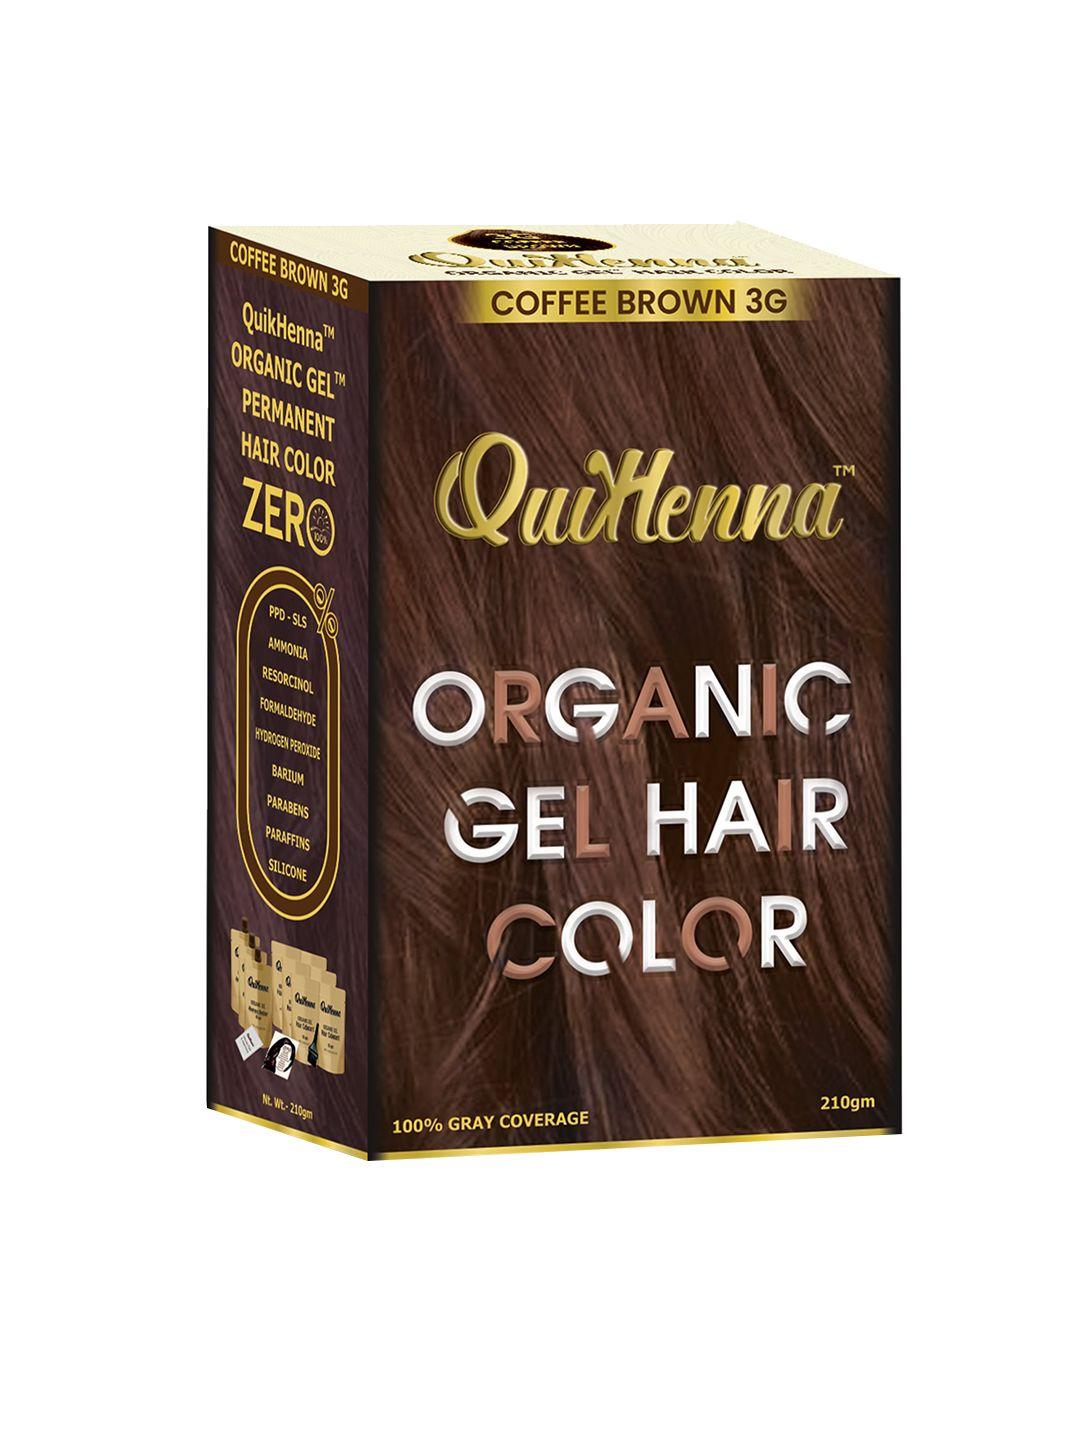 quikhenna organic gel ppd & ammonia free hair colour 210gm - coffee brown 3g